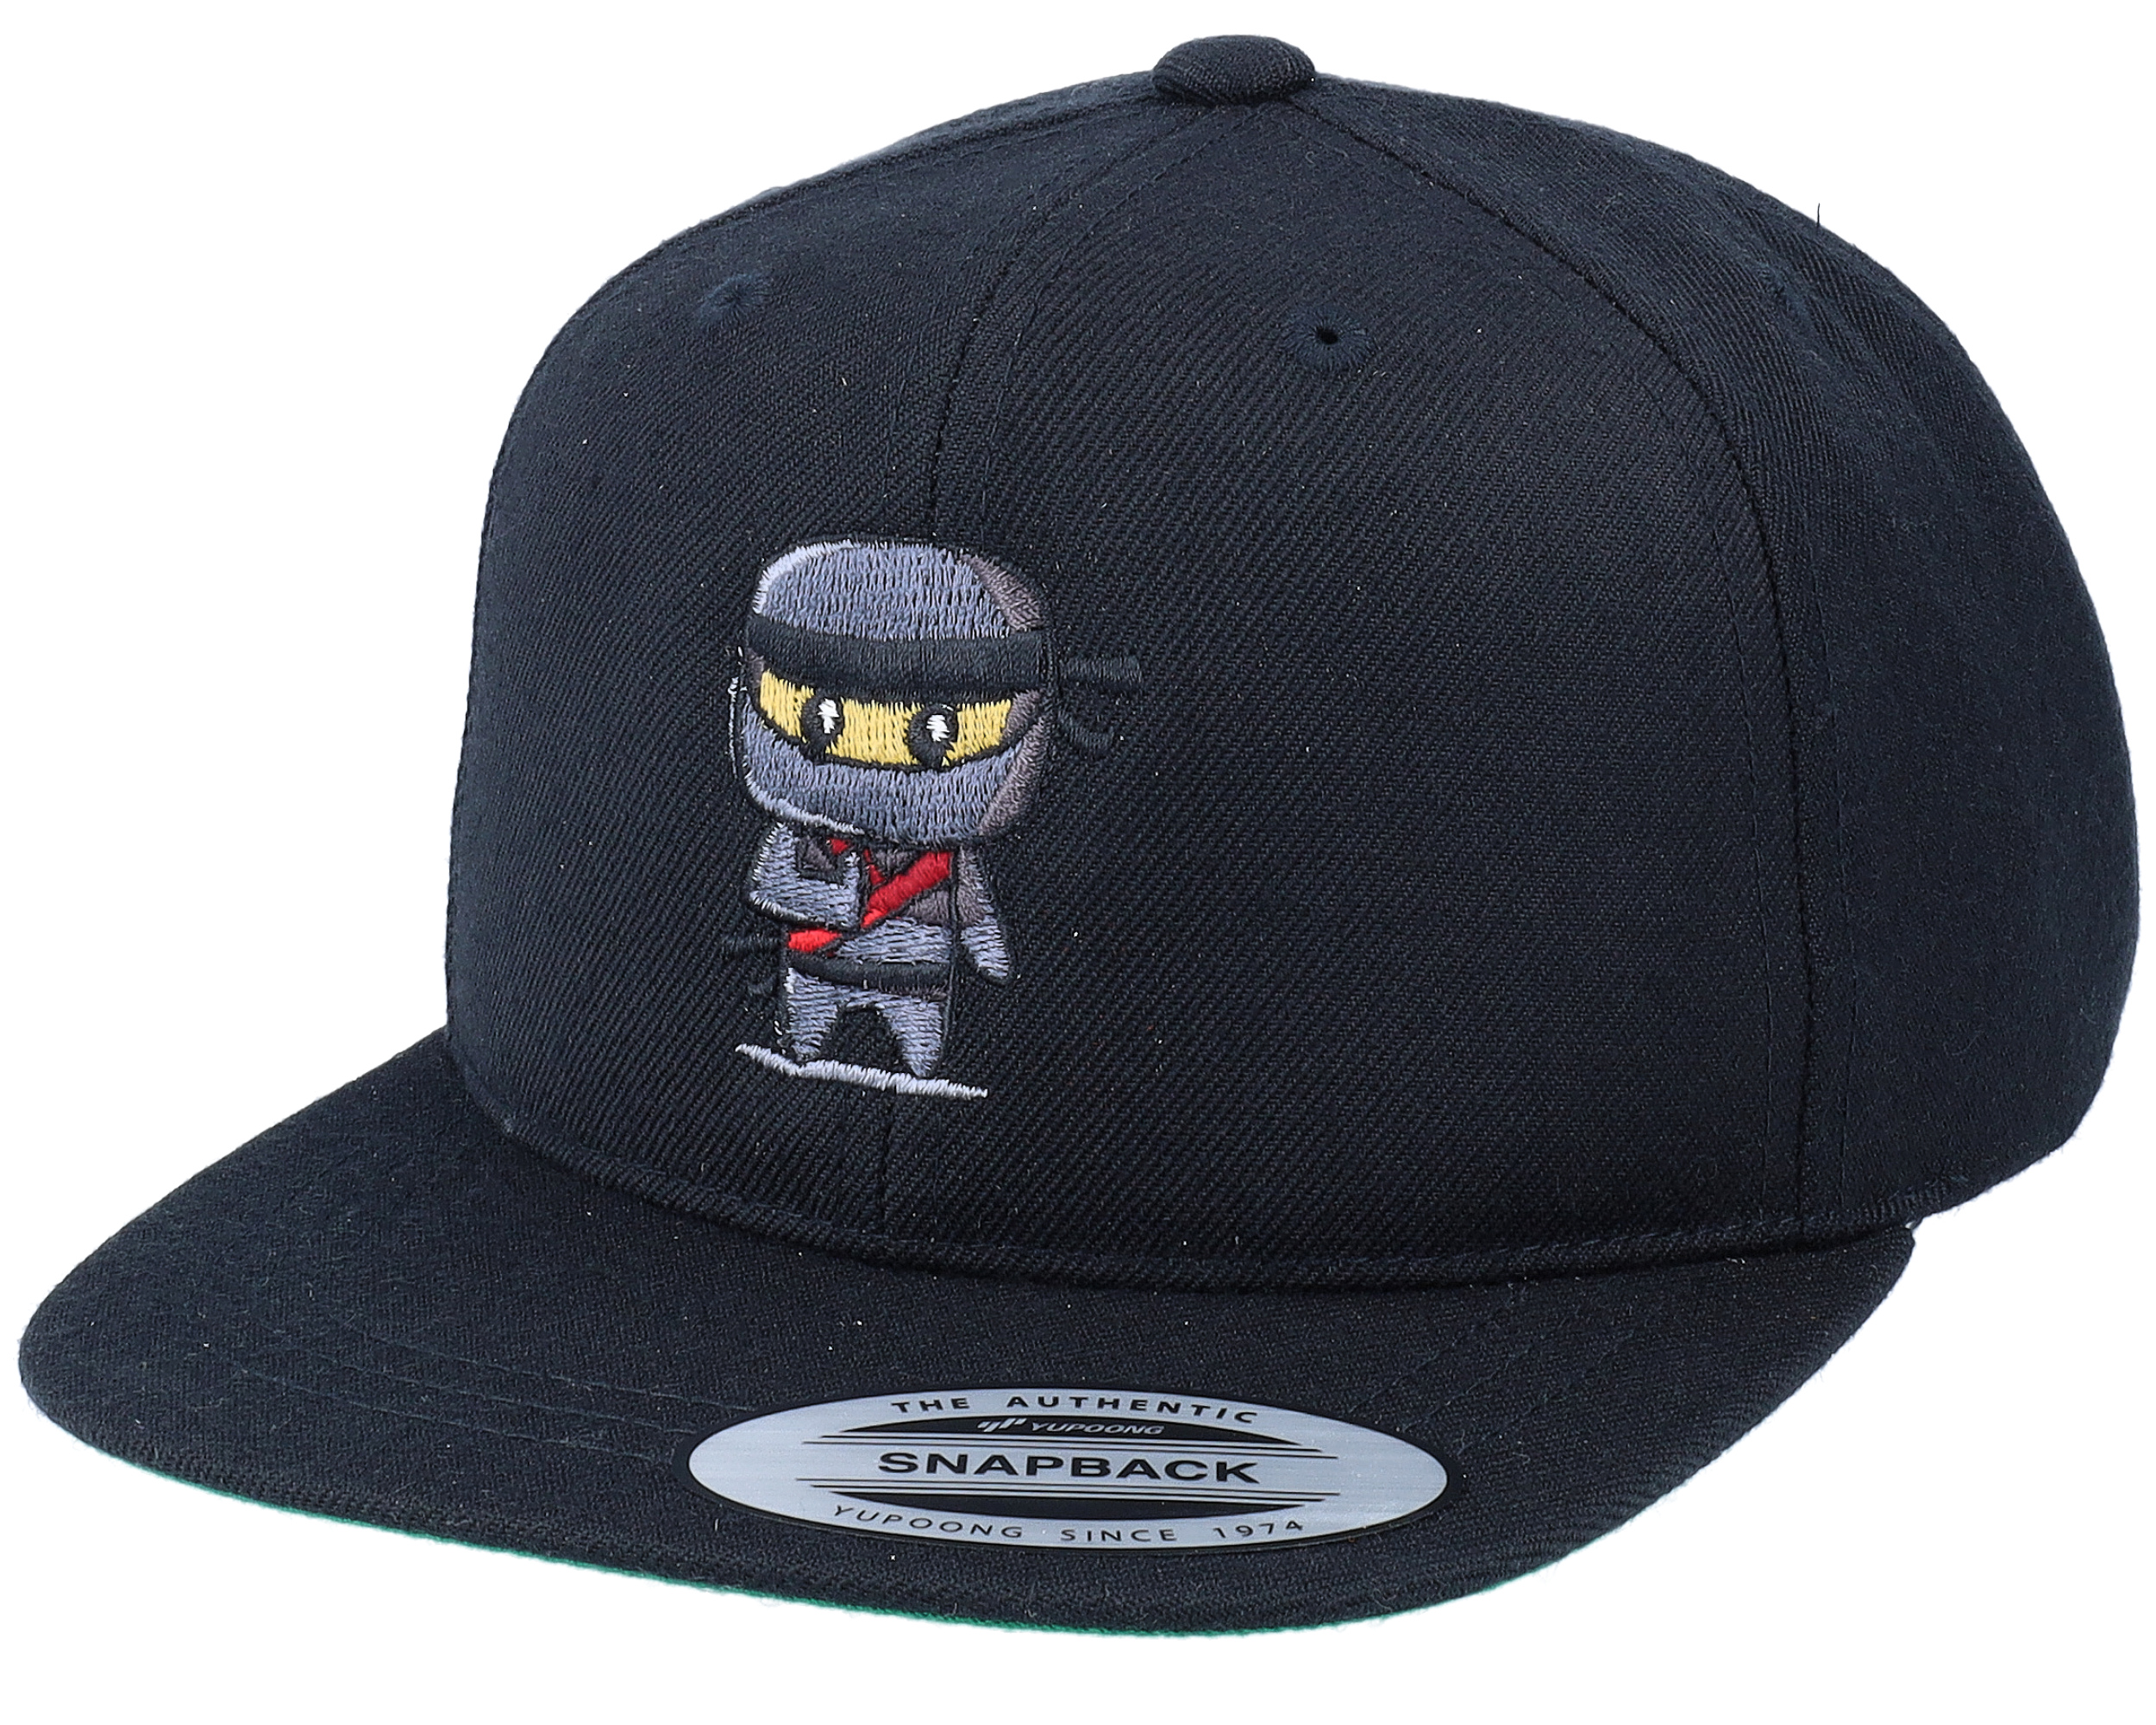 Teenage Mutant Ninja Turtles Snapback Hat, Black - New